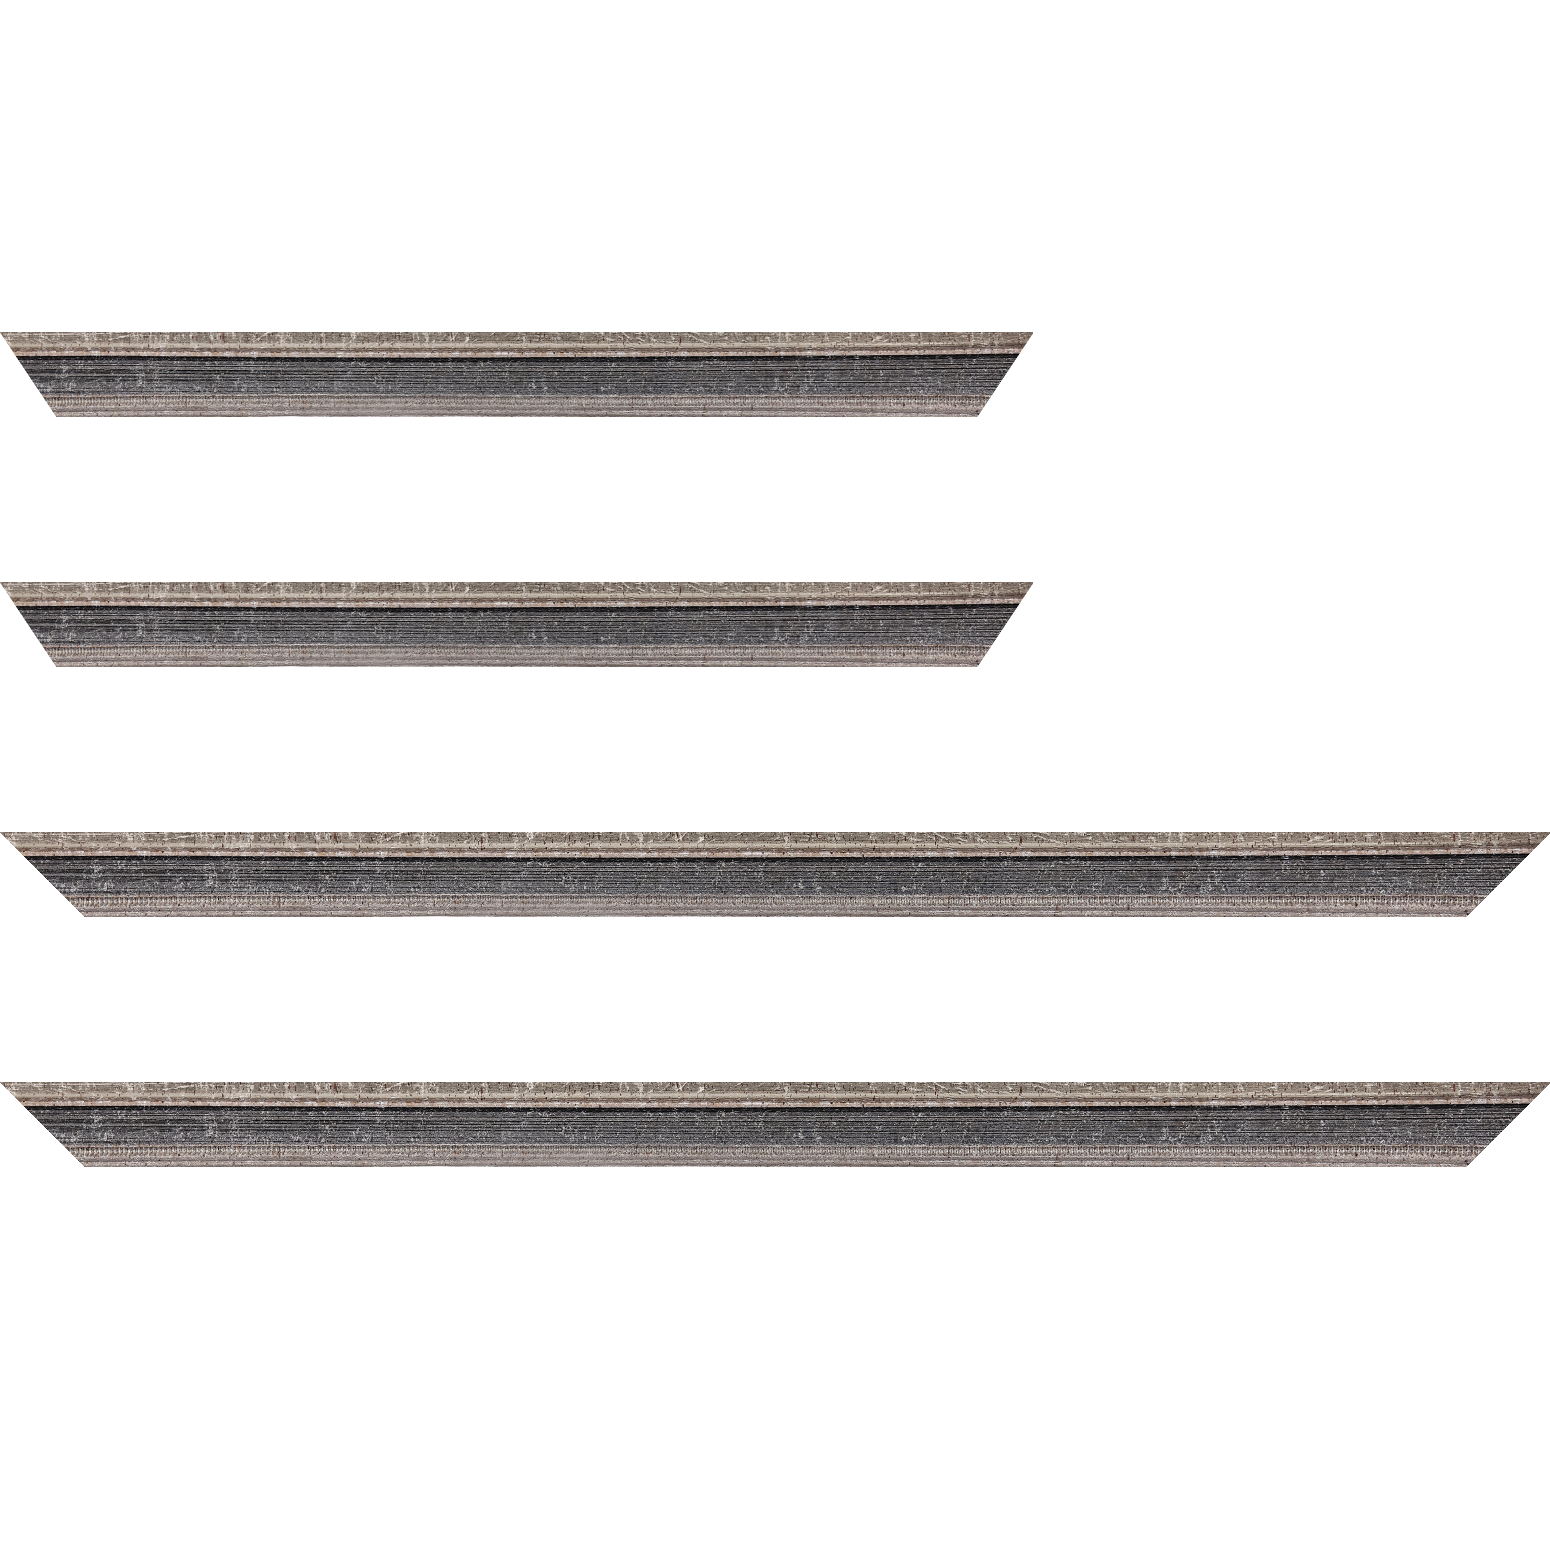 Baguette bois profil incurvé largeur 2.4cm argent antique gorge gris noirci vieilli filet perle argent - 34x40